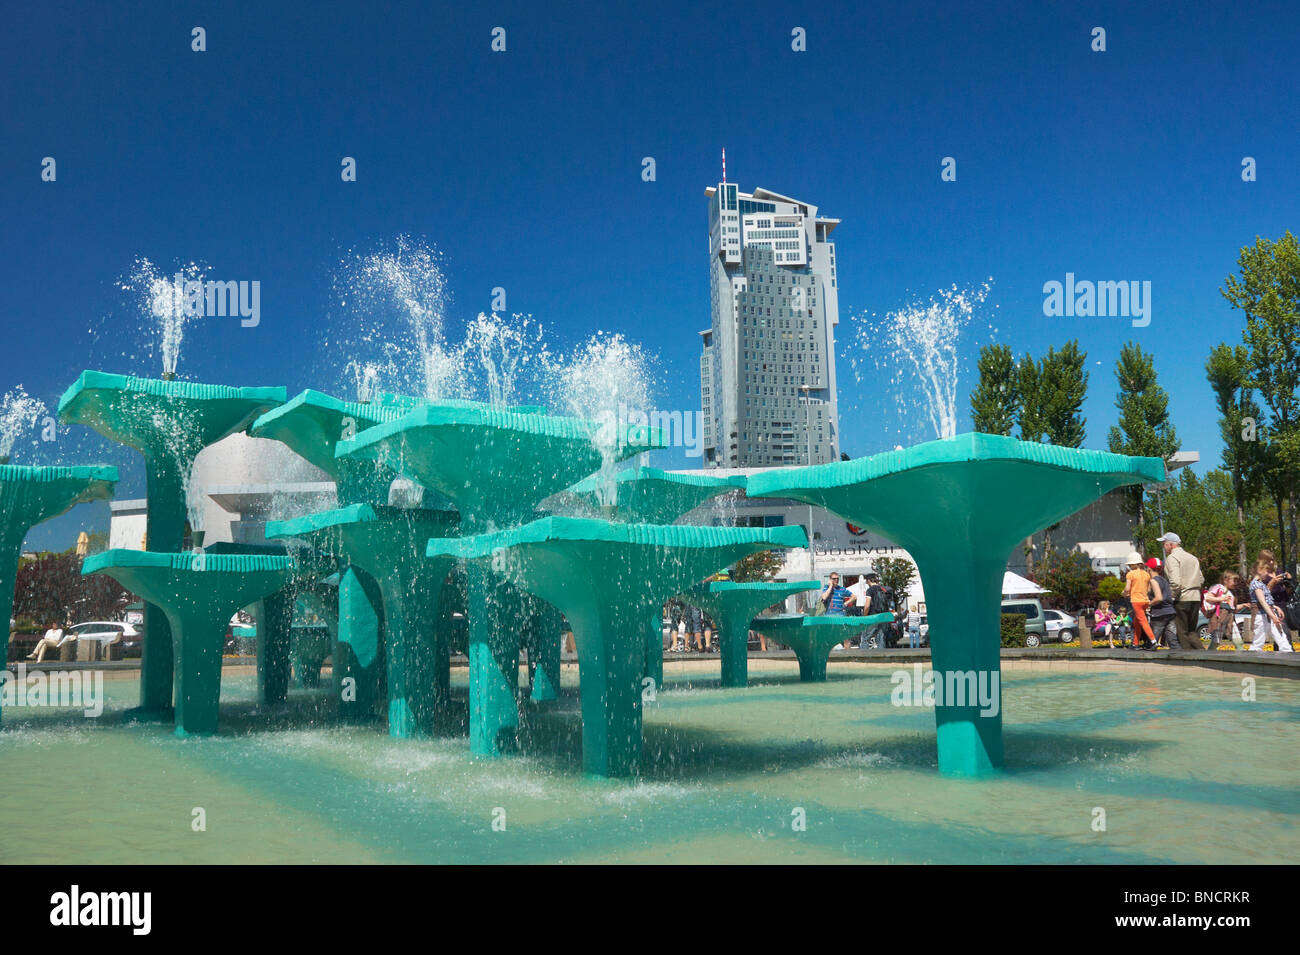 Gdynia - Fountain on the Kosciuszko Square, Baltic Sea, Poland Stock Photo